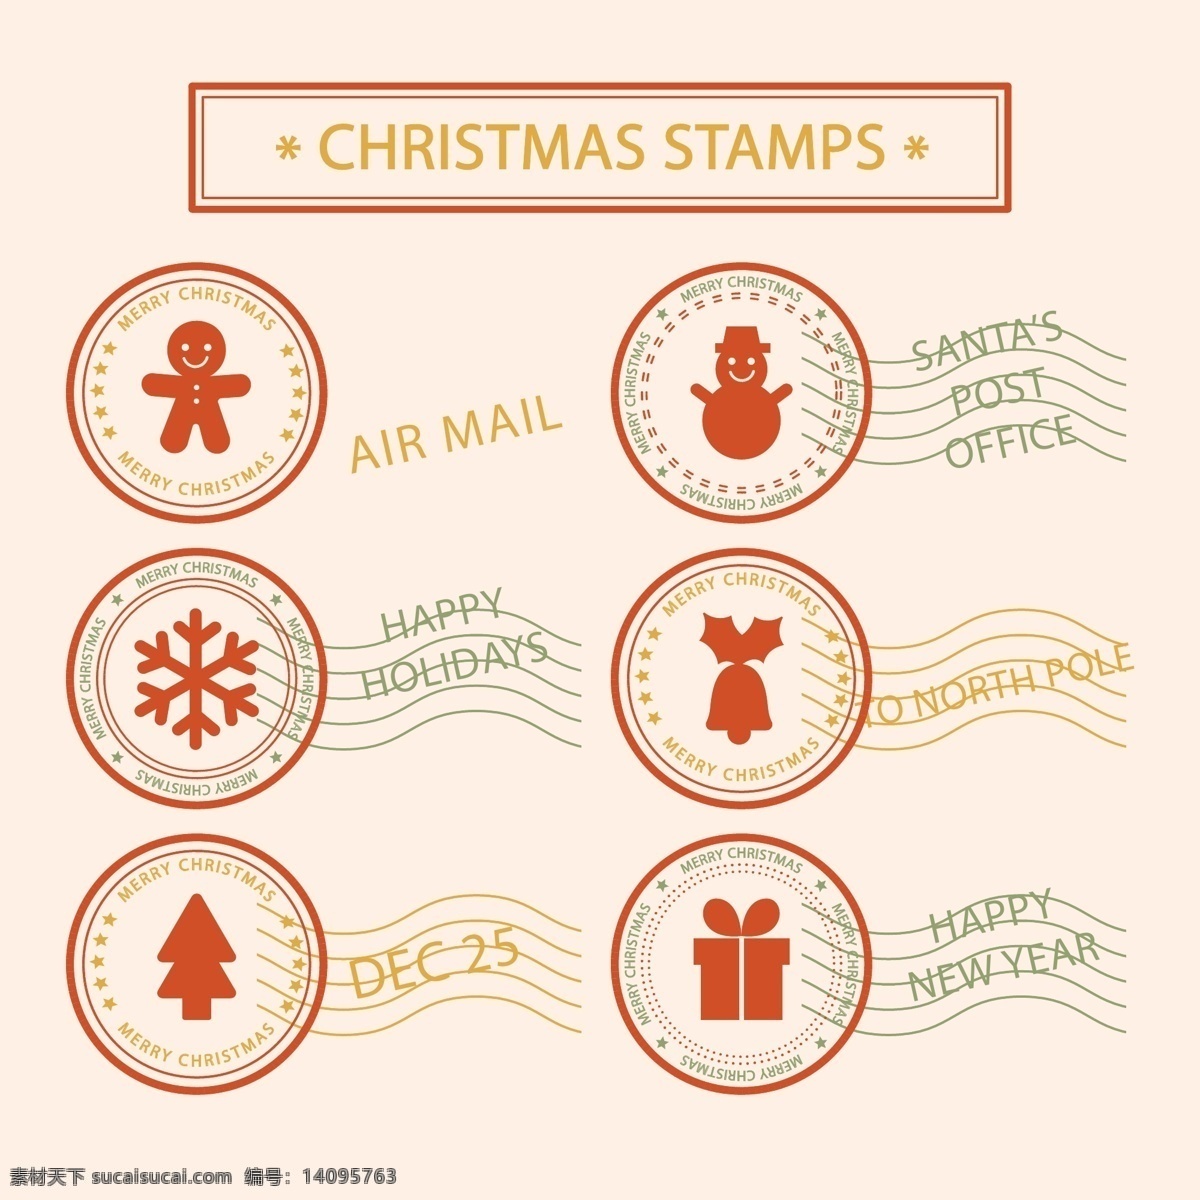 经典 圣诞 邮戳 礼物 雪花 圣诞节 标签 矢量素材 姜饼人 雪人 铃铛 圣诞树